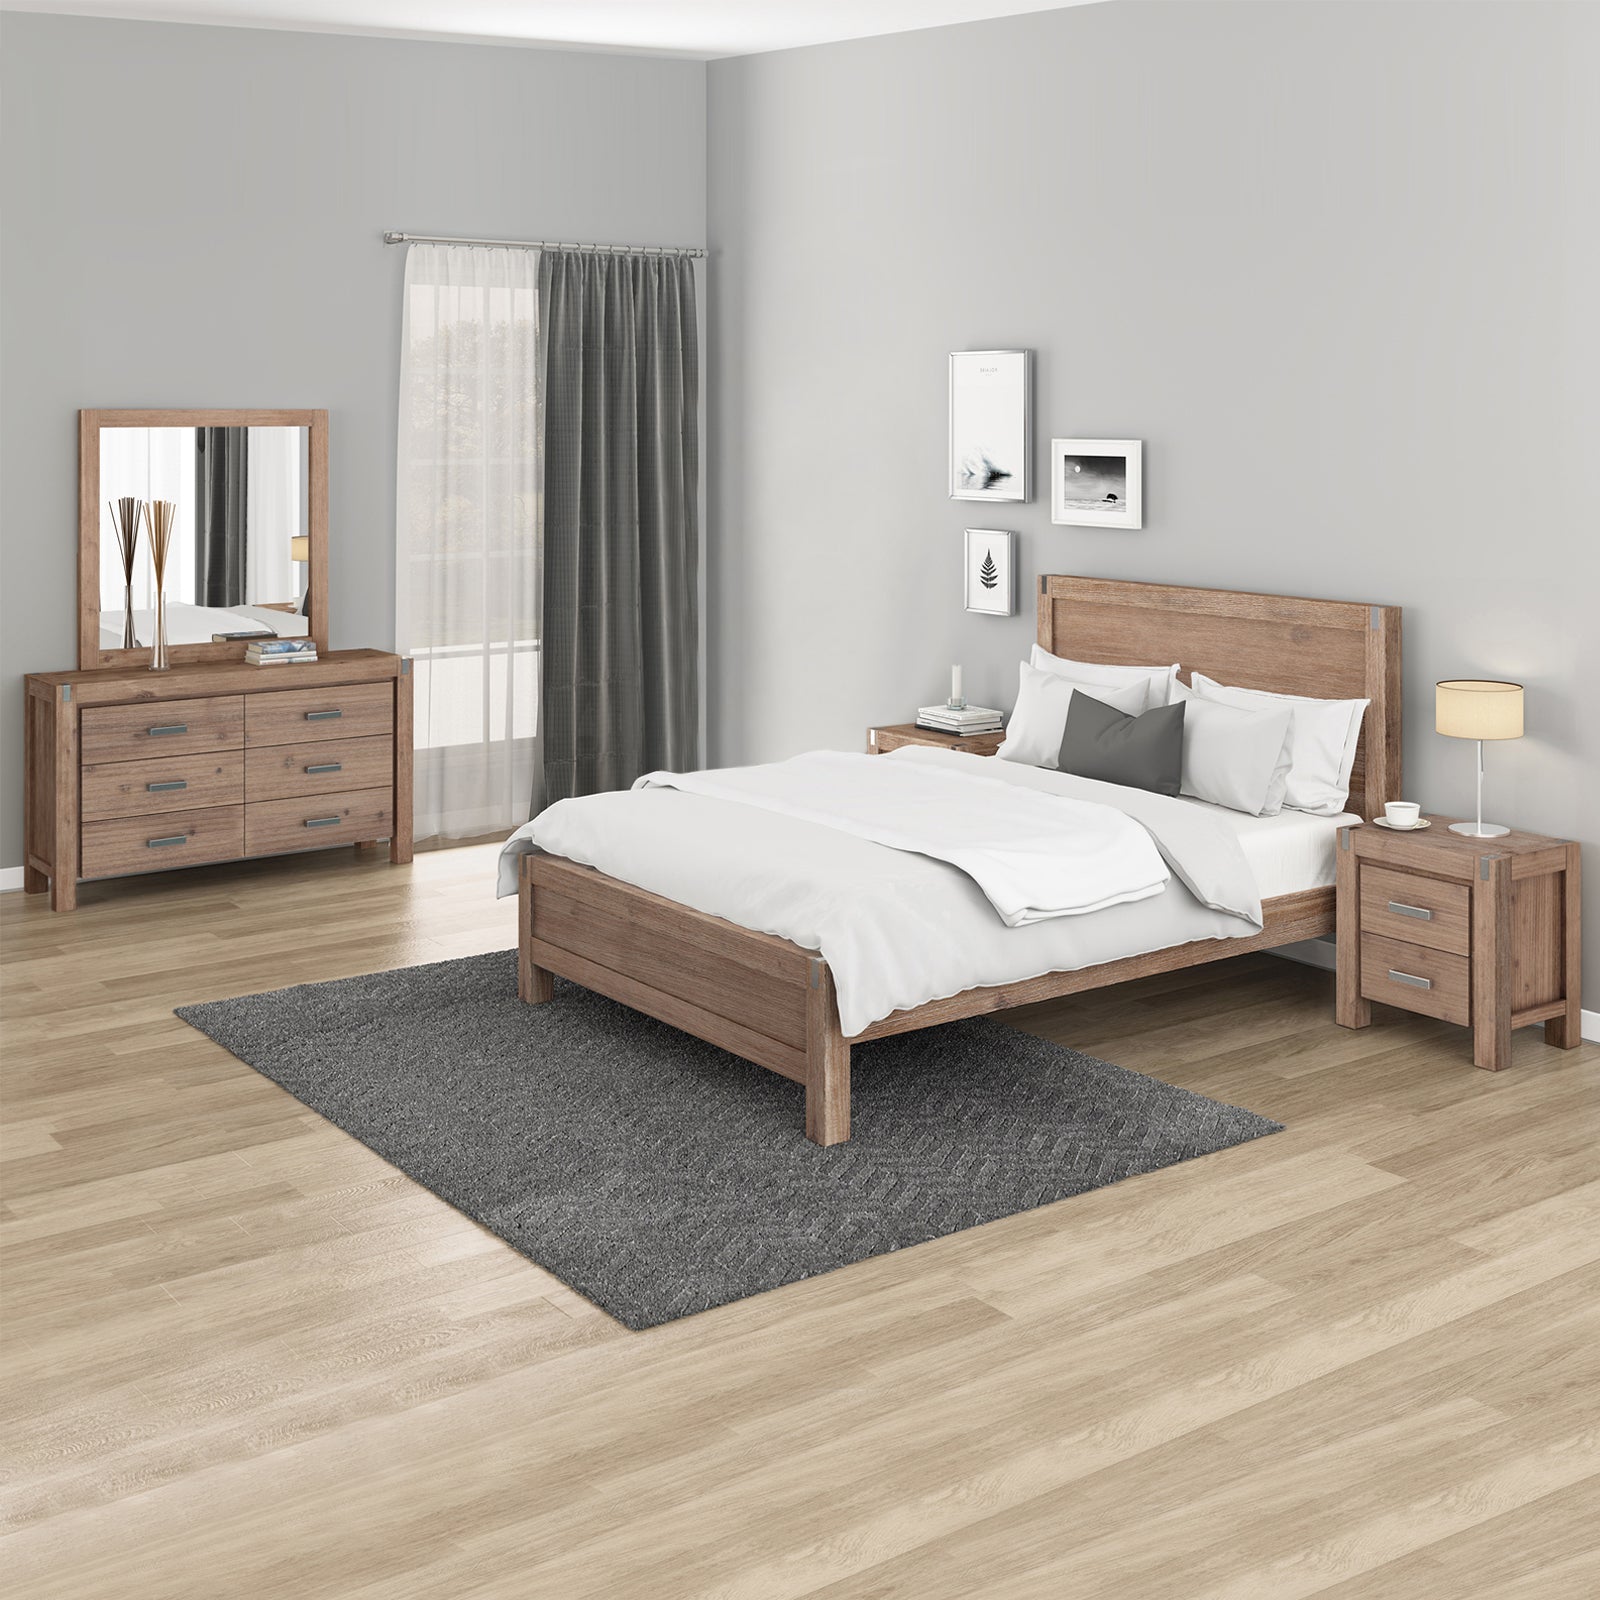 Noor 4 Pieces Queen Size Bedroom Suite Oak Colour with Dresser